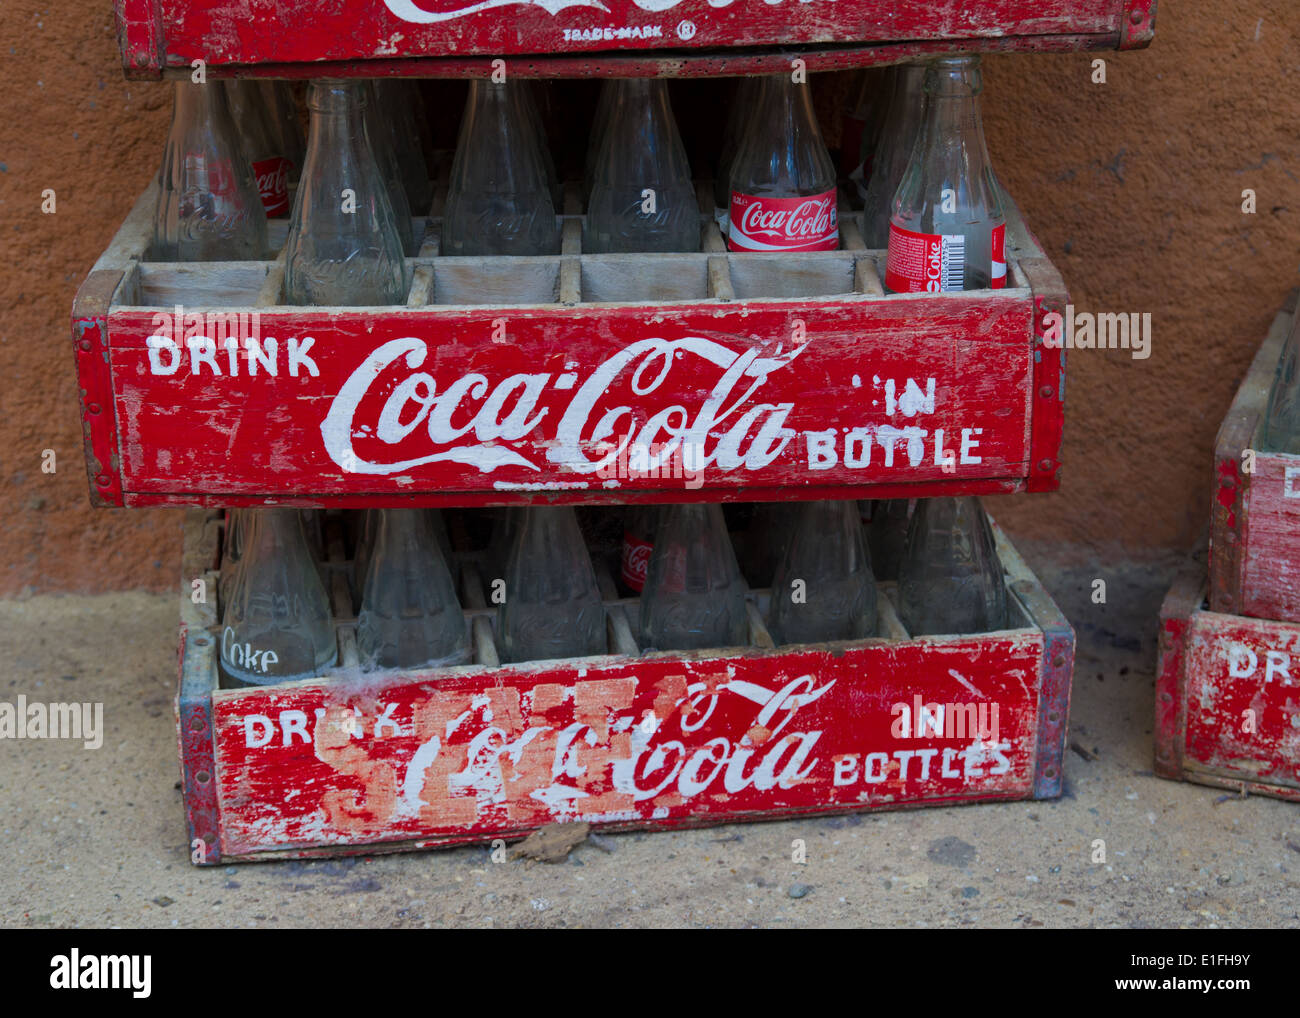 Crates wooden coke bottle Coca Cola